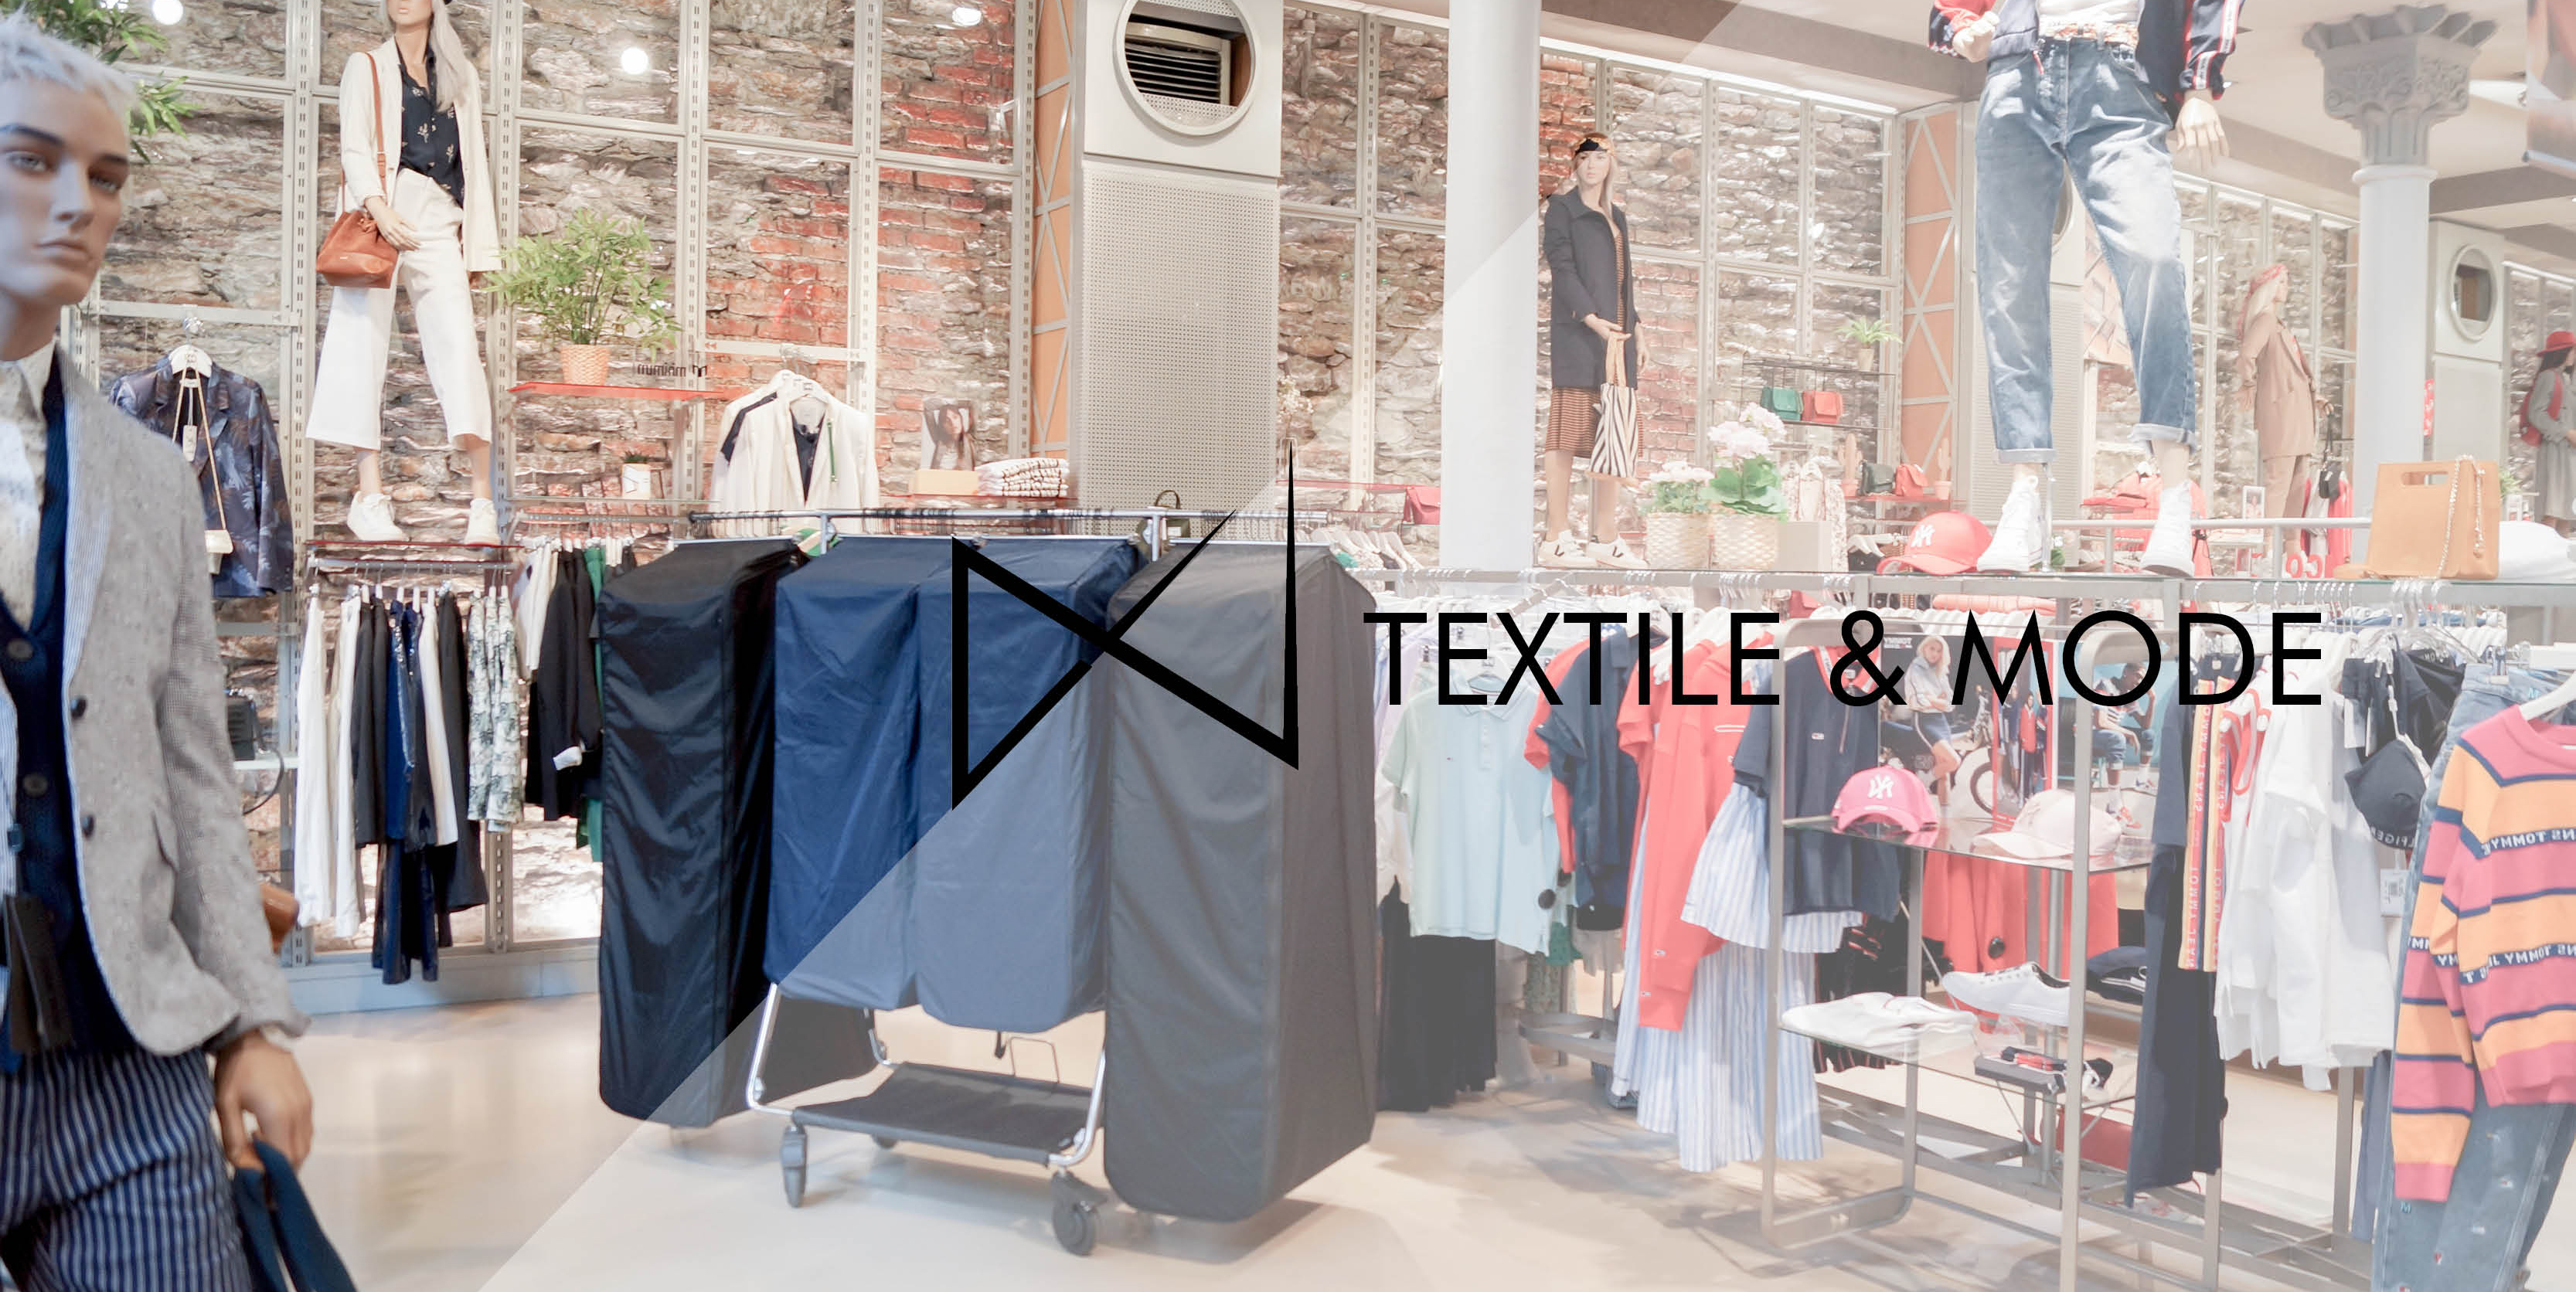 Sacs pour le textile et la mode